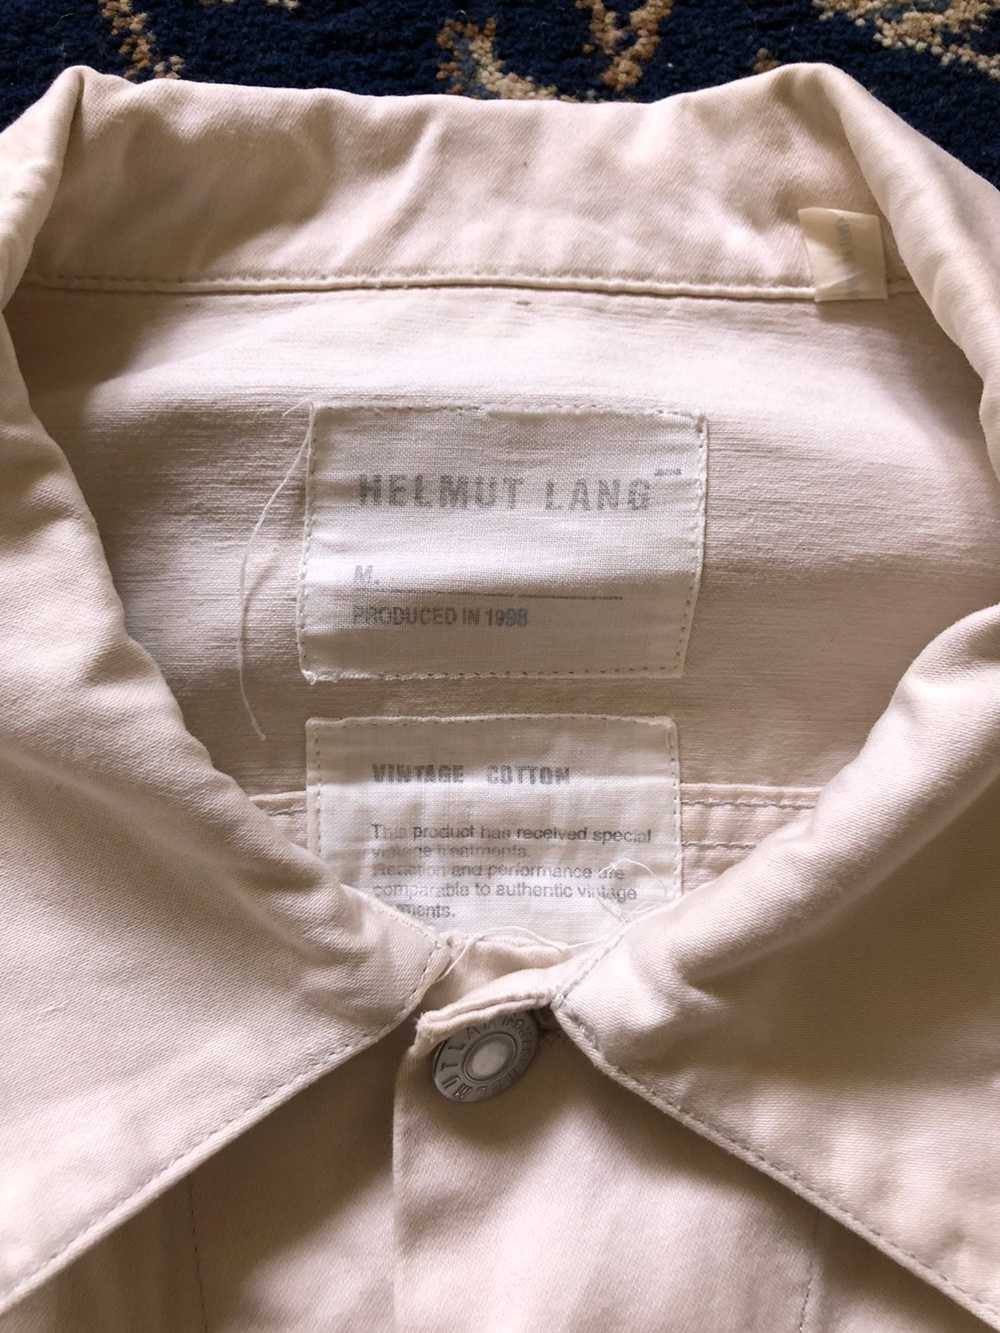 1998 Helmut Lang Off-white Vintage Cotton Jacket - image 3